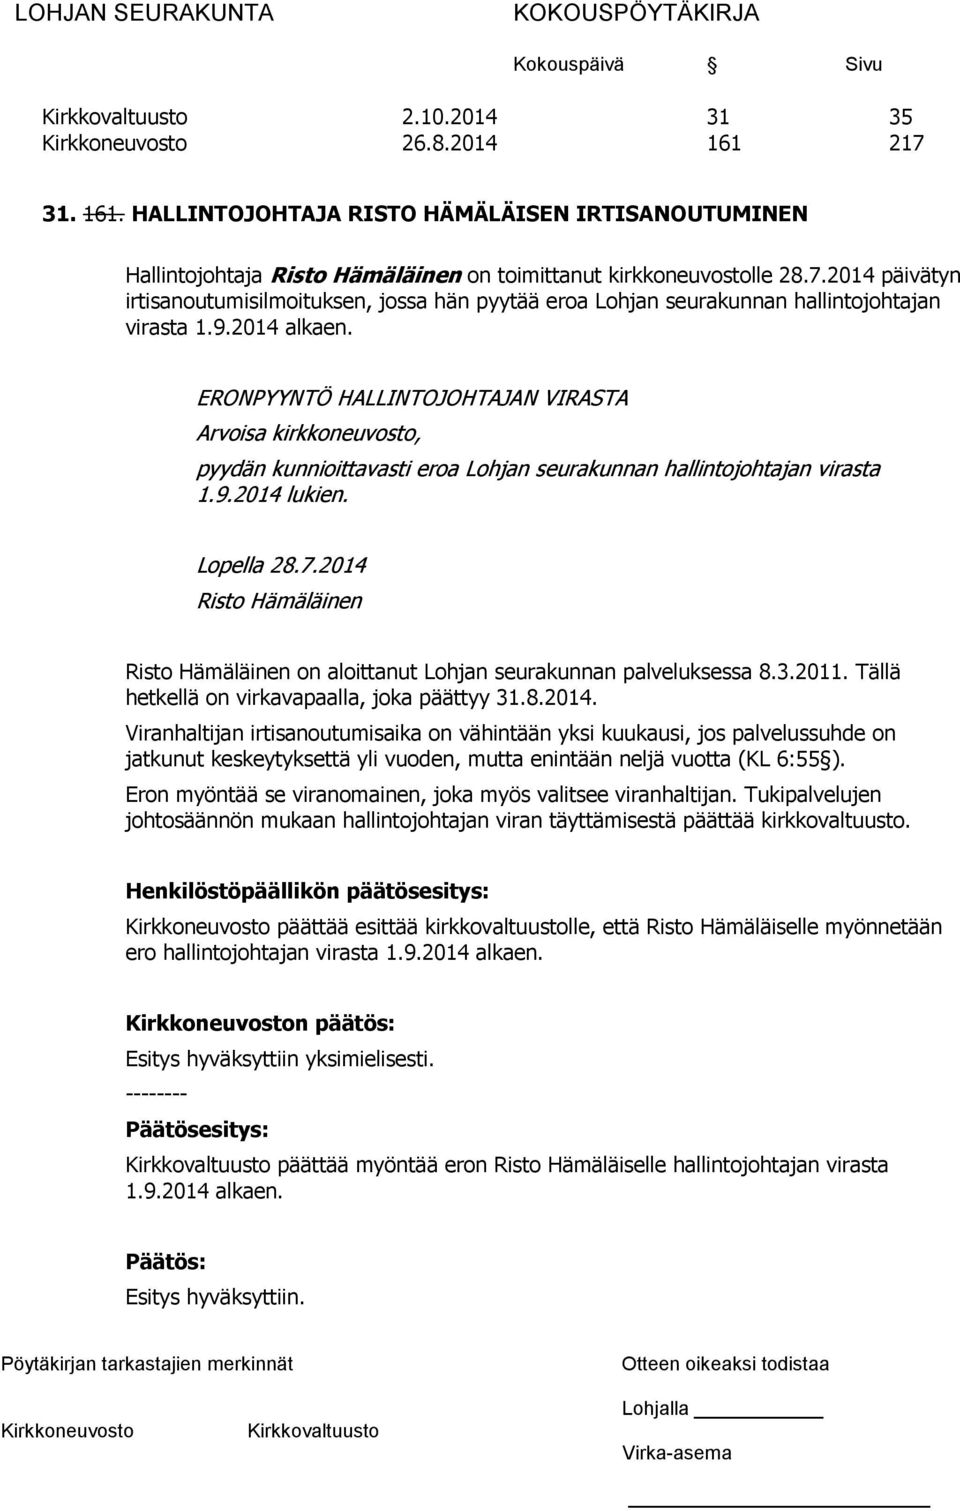 2014 Risto Hämäläinen Risto Hämäläinen on aloittanut Lohjan seurakunnan palveluksessa 8.3.2011. Tällä hetkellä on virkavapaalla, joka päättyy 31.8.2014. Viranhaltijan irtisanoutumisaika on vähintään yksi kuukausi, jos palvelussuhde on jatkunut keskeytyksettä yli vuoden, mutta enintään neljä vuotta (KL 6:55 ).